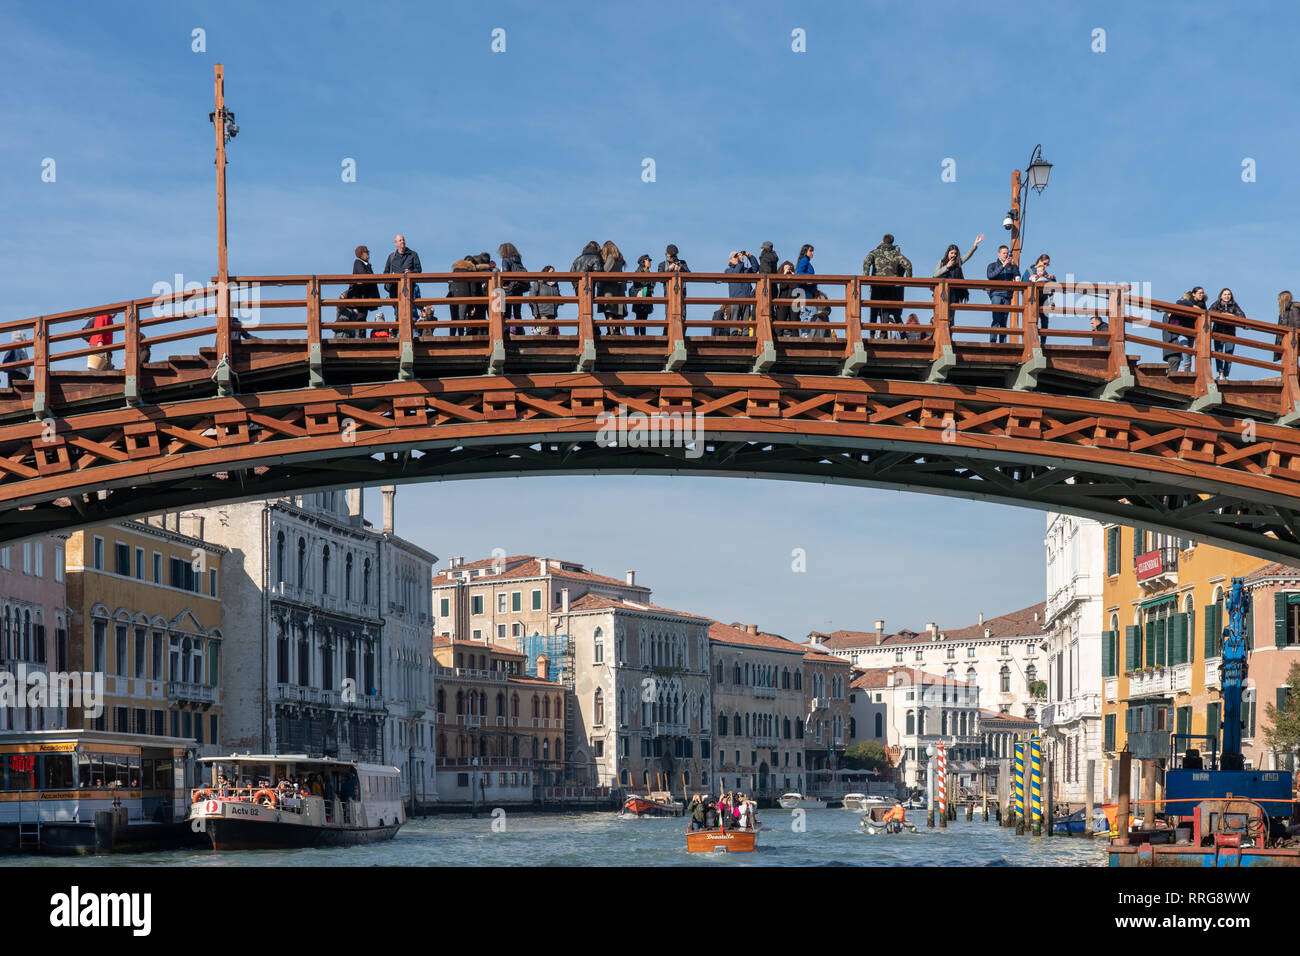 Viste generali di Venezia. Da una serie di foto di viaggio in Italia. Foto data: mercoledì, 13 febbraio 2019. Foto: Roger Garfield/Alamy Foto Stock